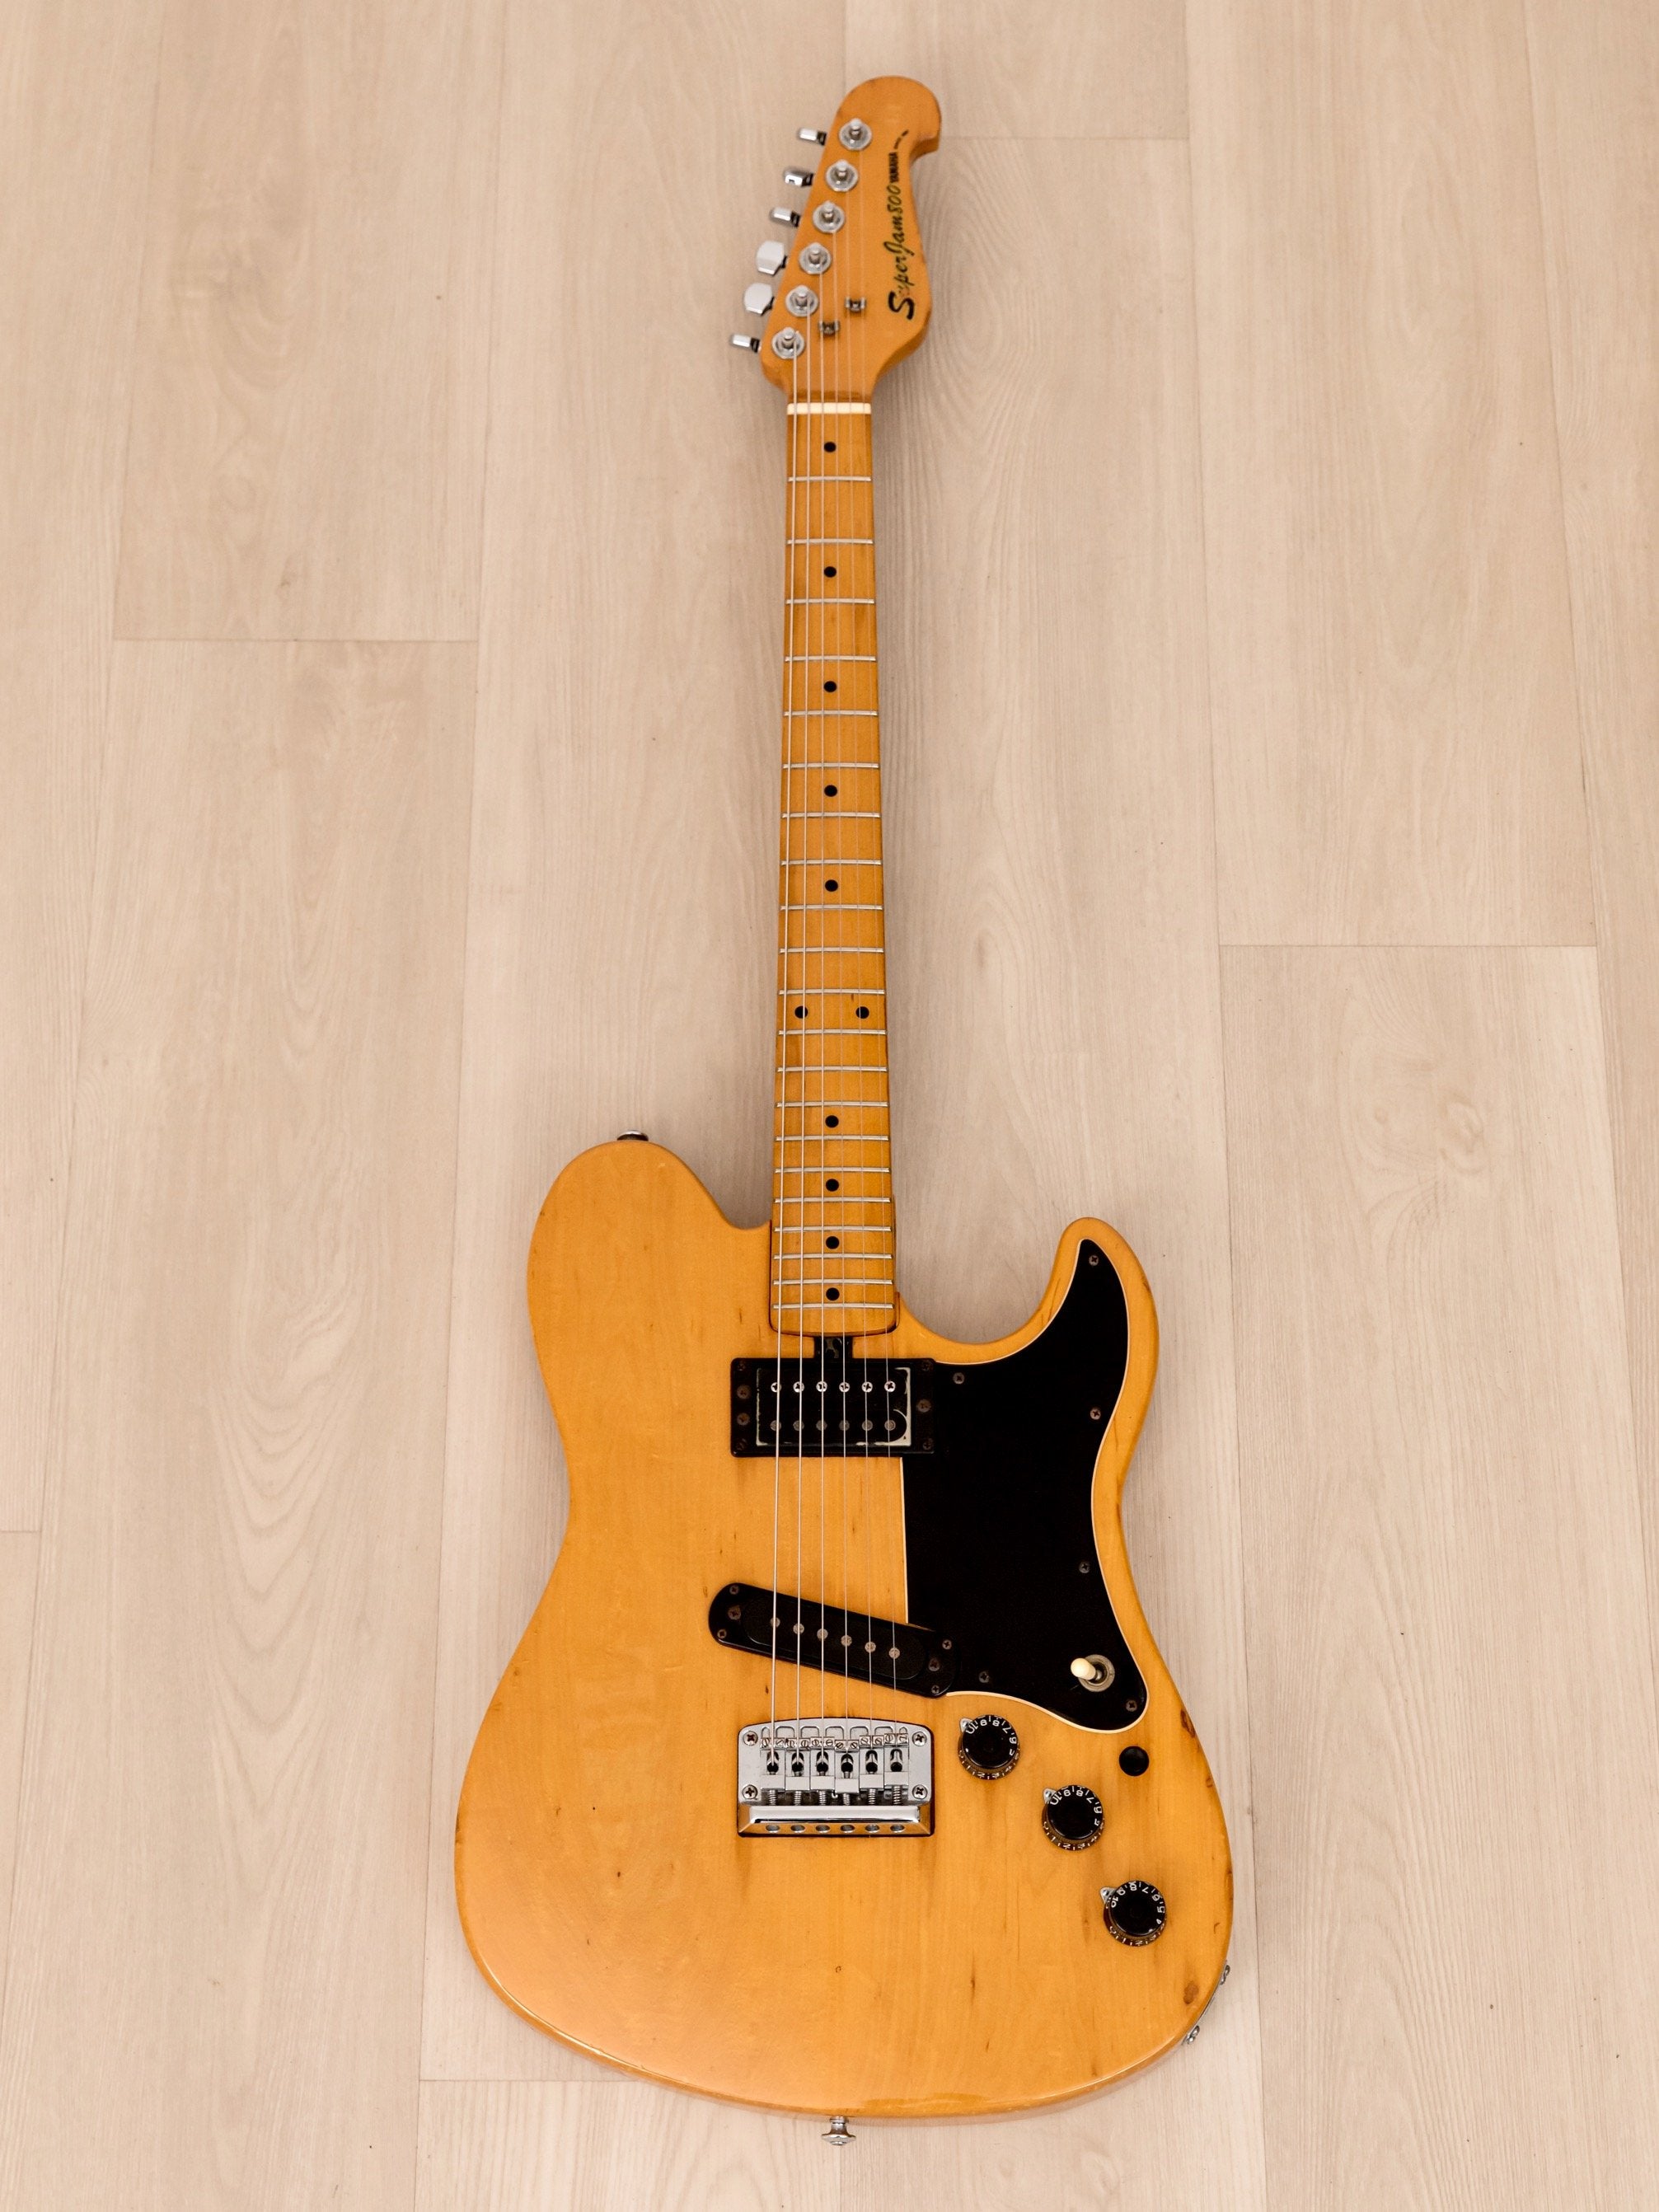 1980 Yamaha Super Jam 800 SJ-800 Vintage Guitar Yellow Natural